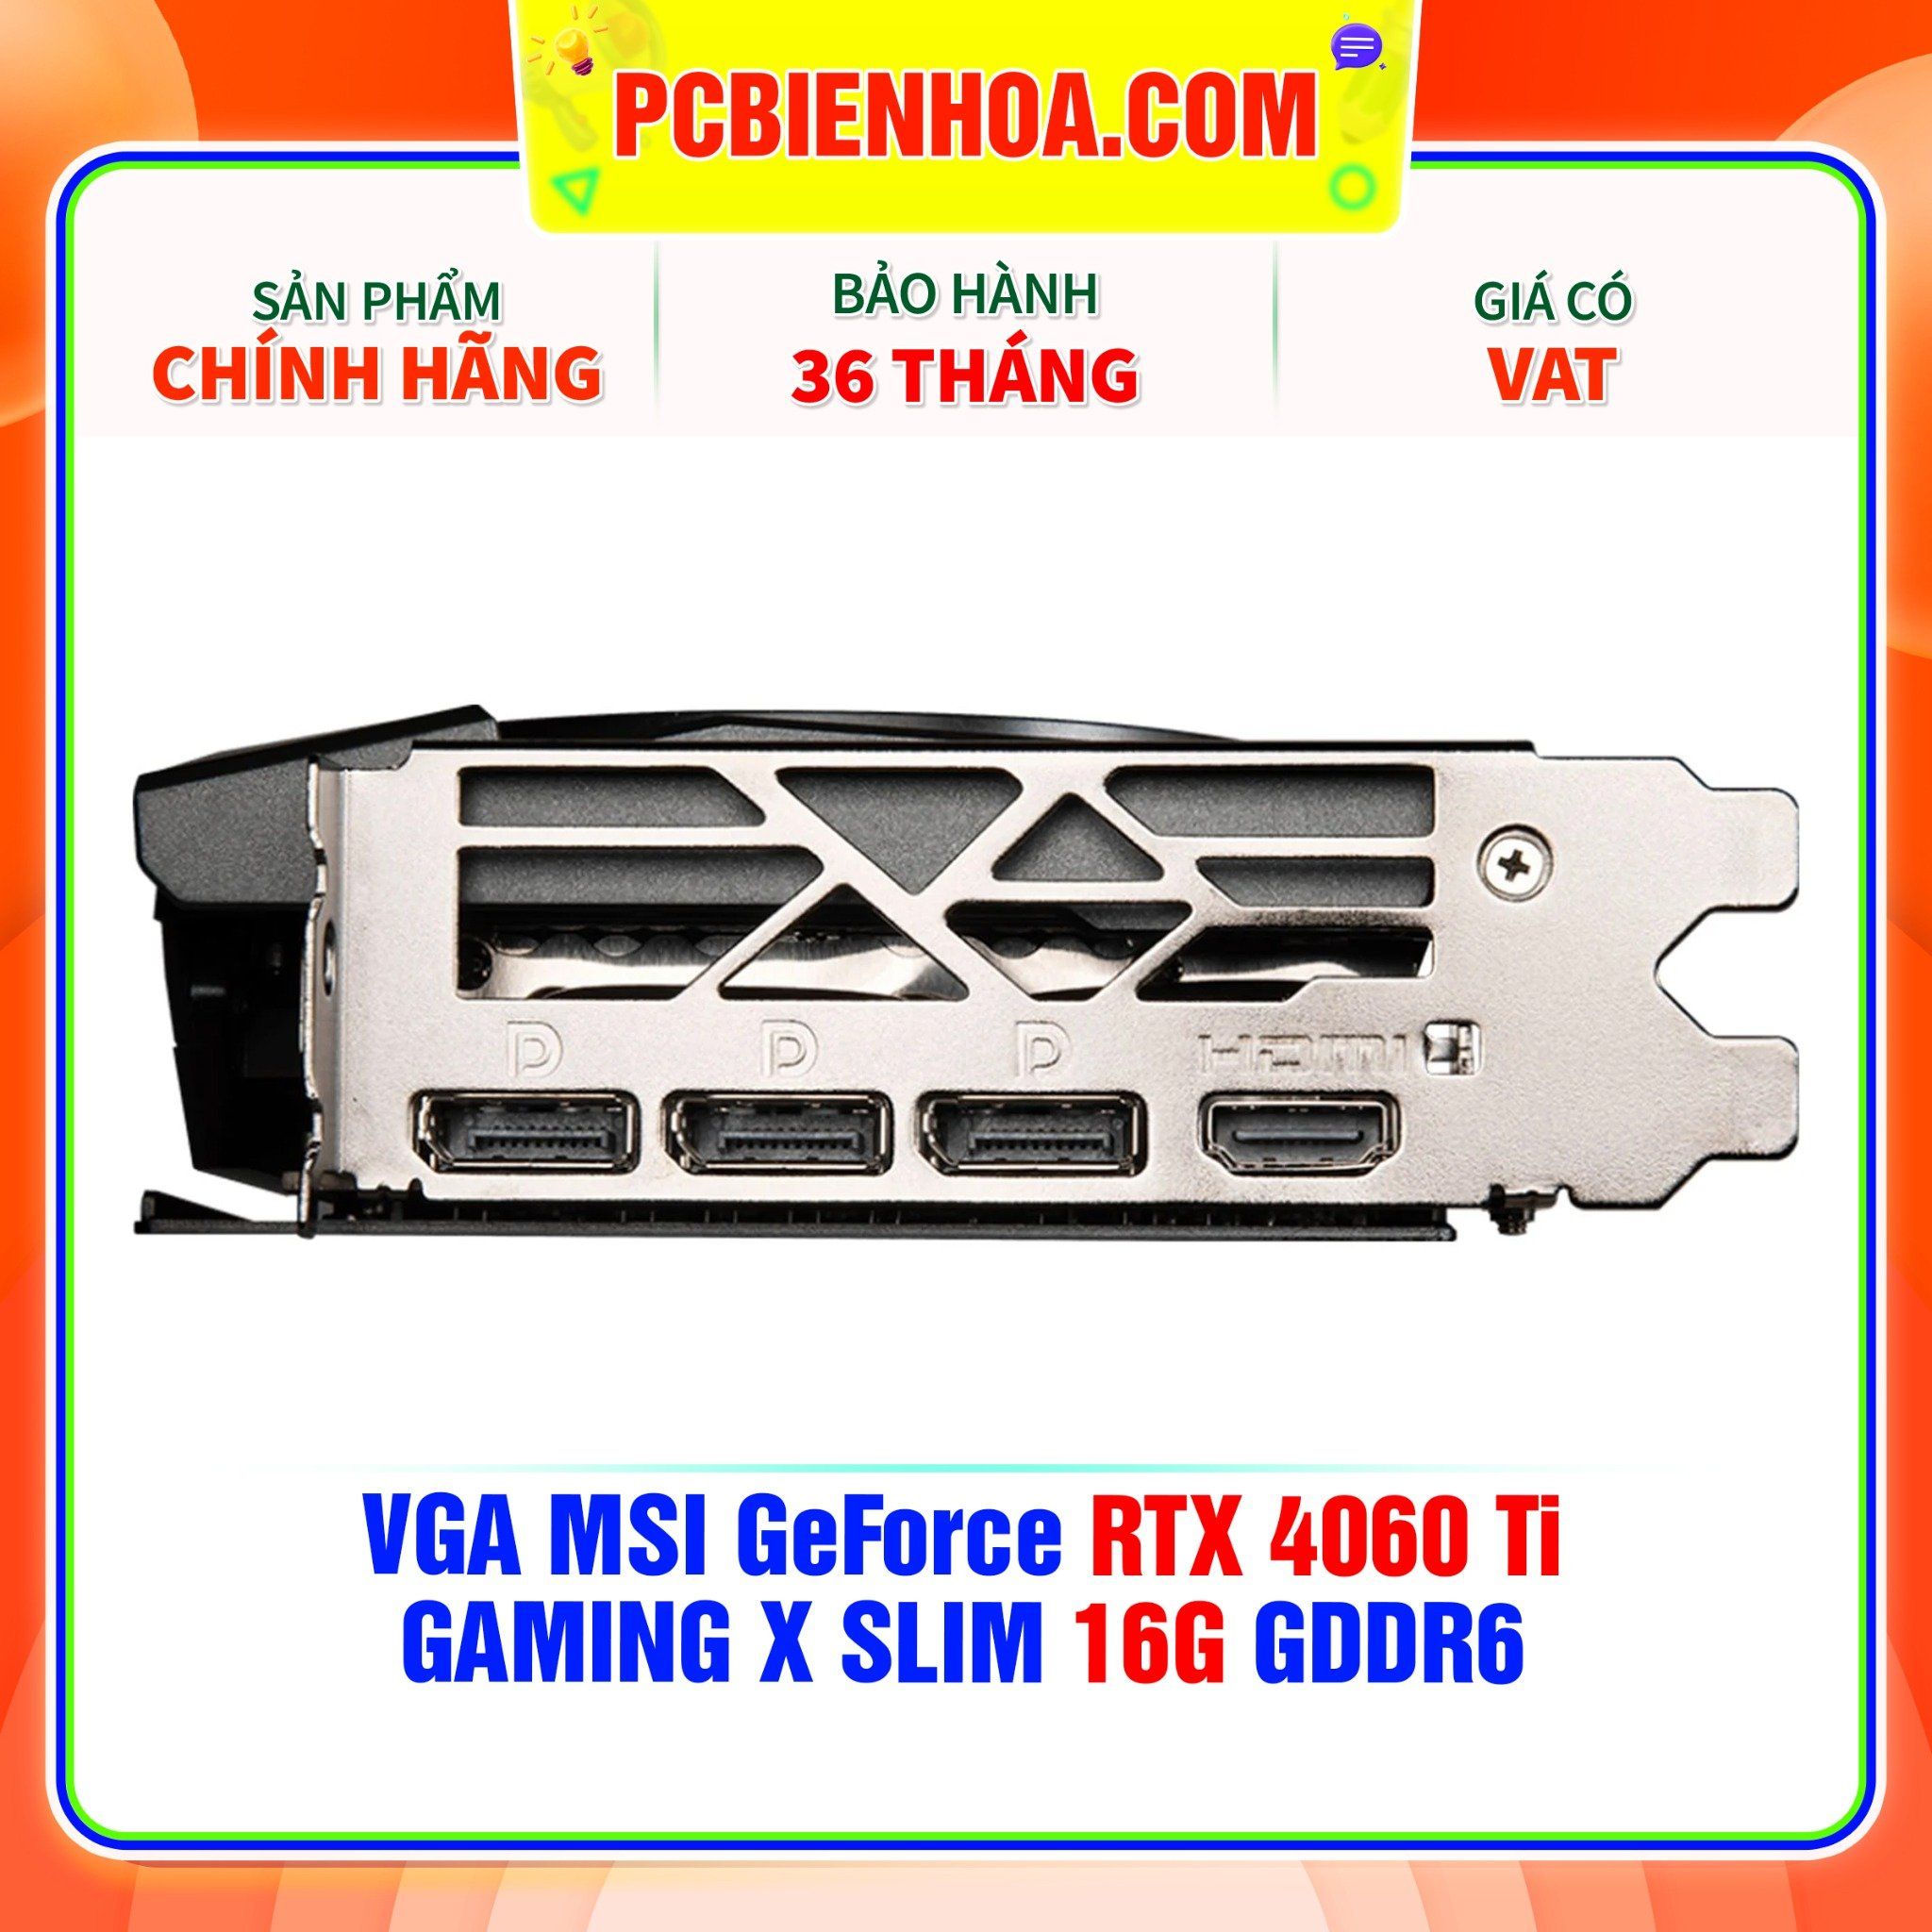  VGA MSI GeForce RTX 4060 Ti GAMING X SLIM 16G GDDR6 